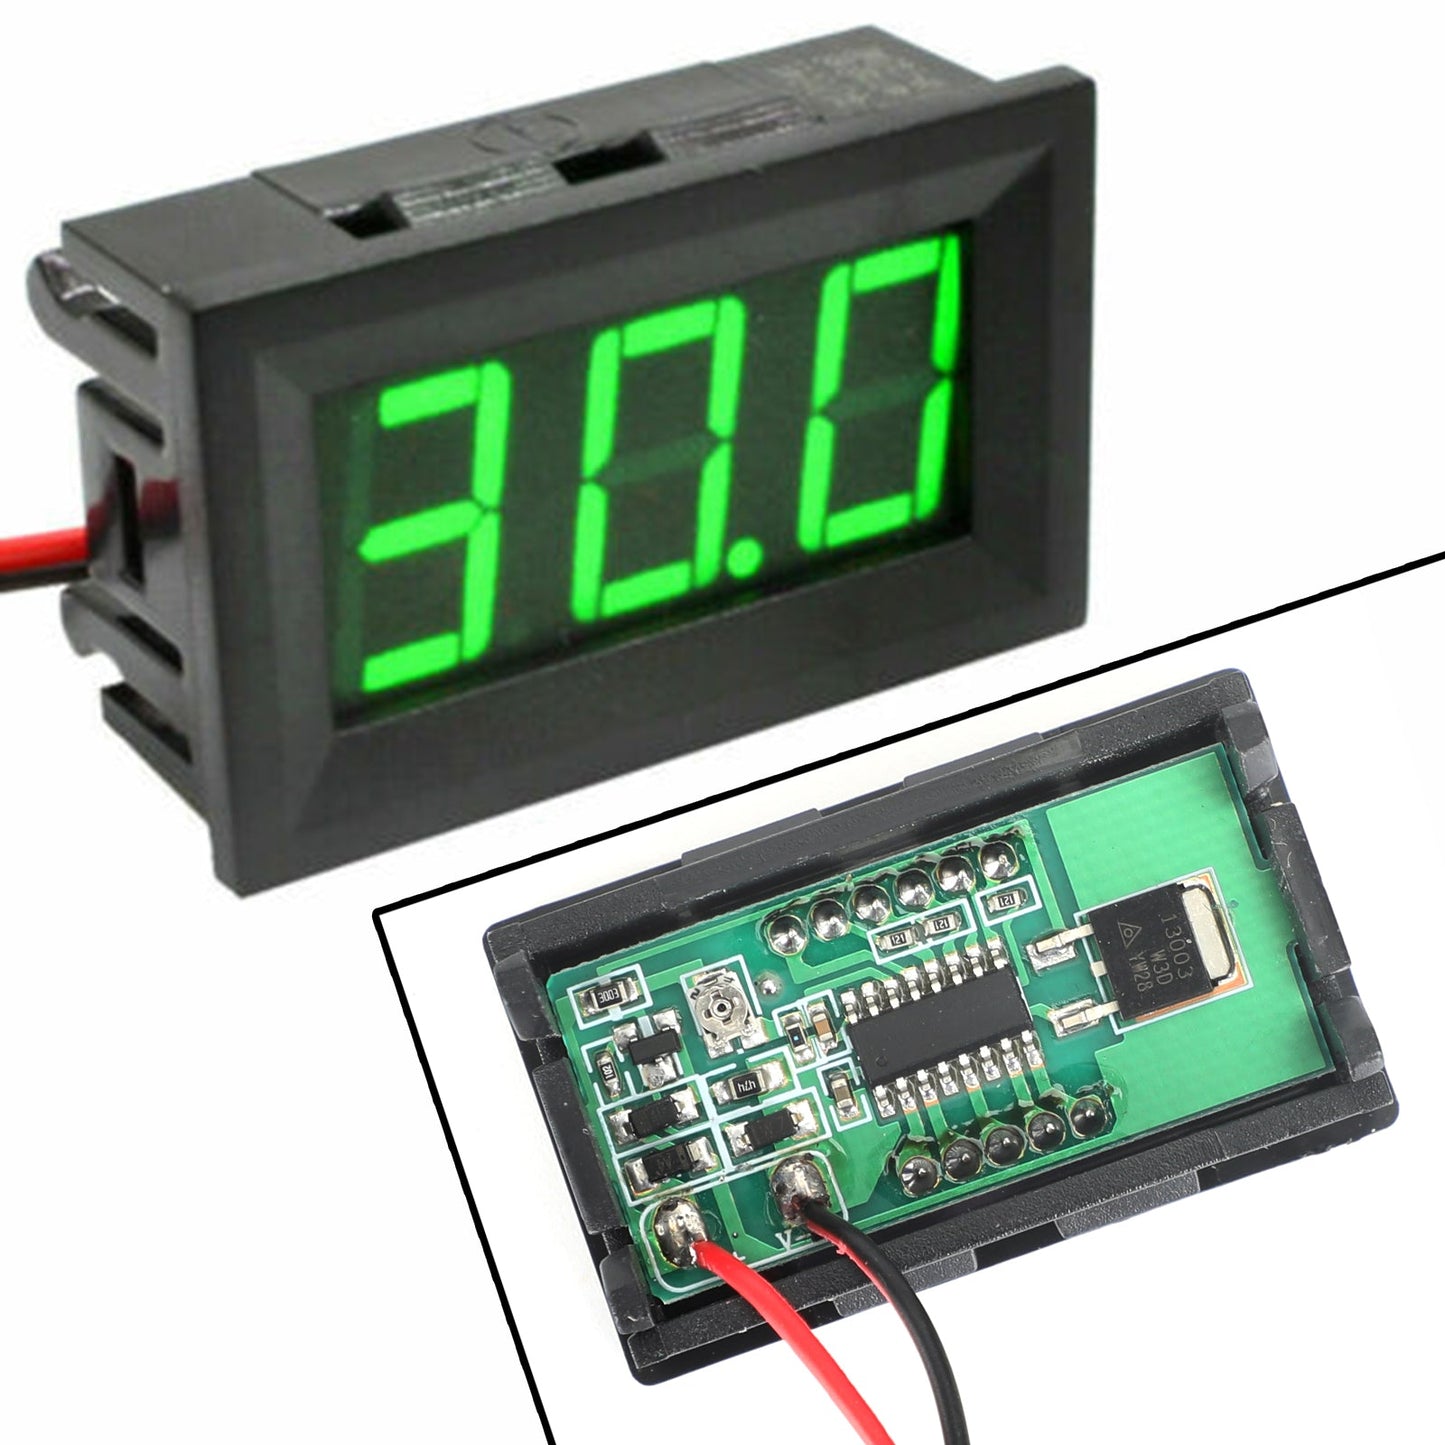 5pcs DC5-120V 0.56" 2-Wire LED Digital Display Panel Voltmeter Volt Tester